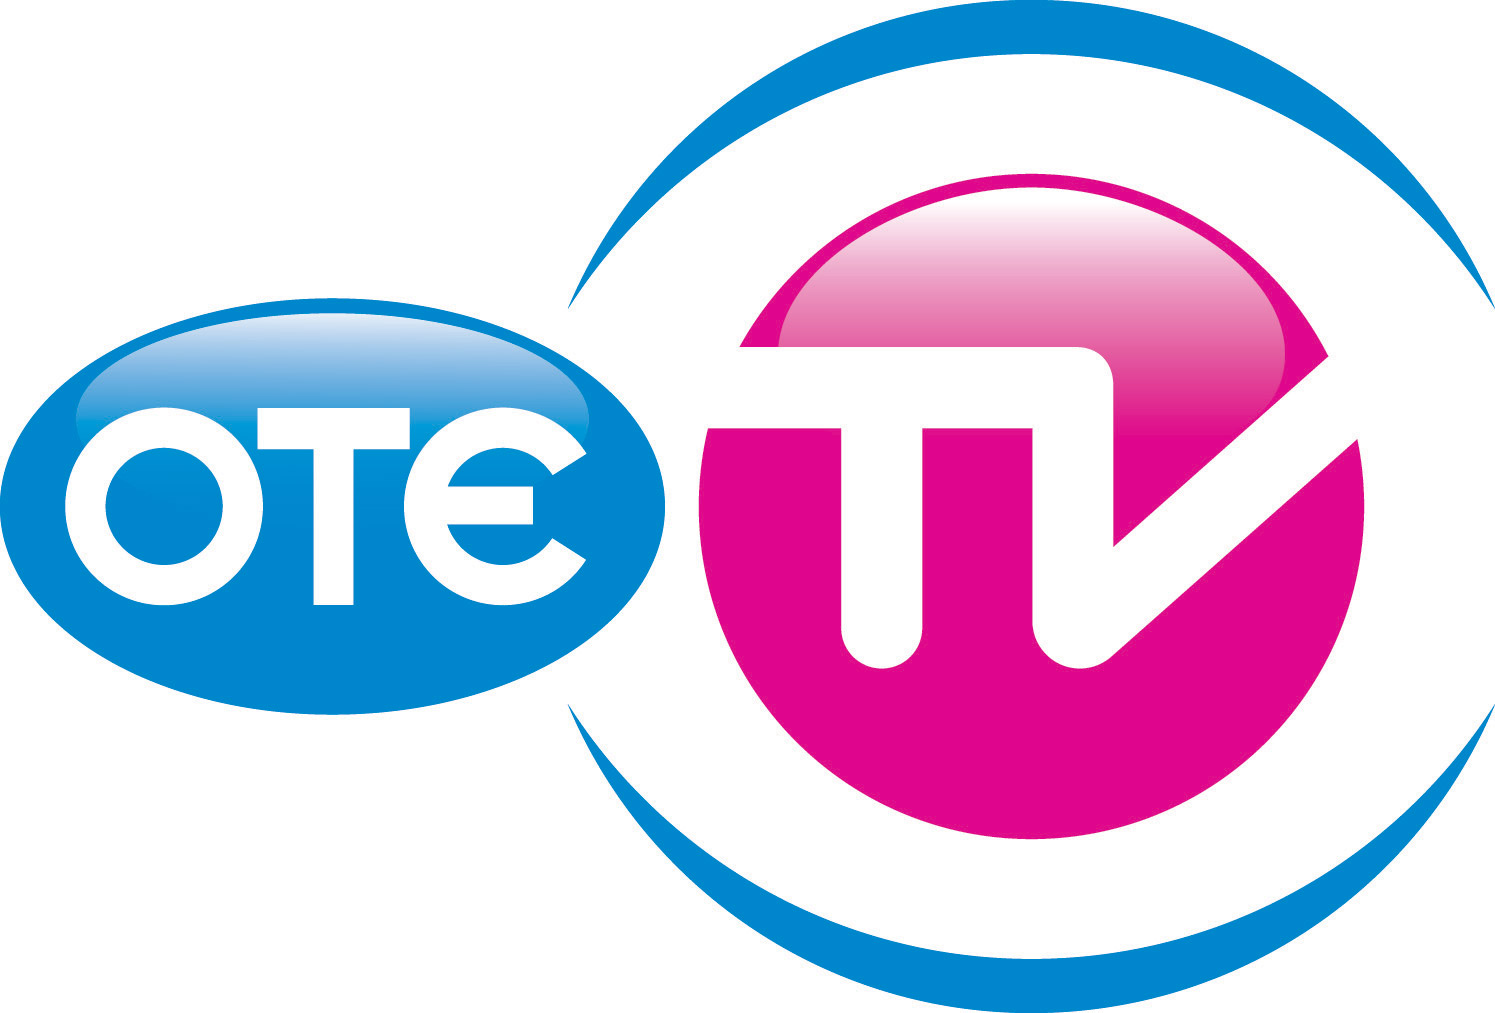 Επίθεση σε συνεργείο του ΟΤΕ TV στο Καυτανζόγλειο με τέσσερις τραυματίες